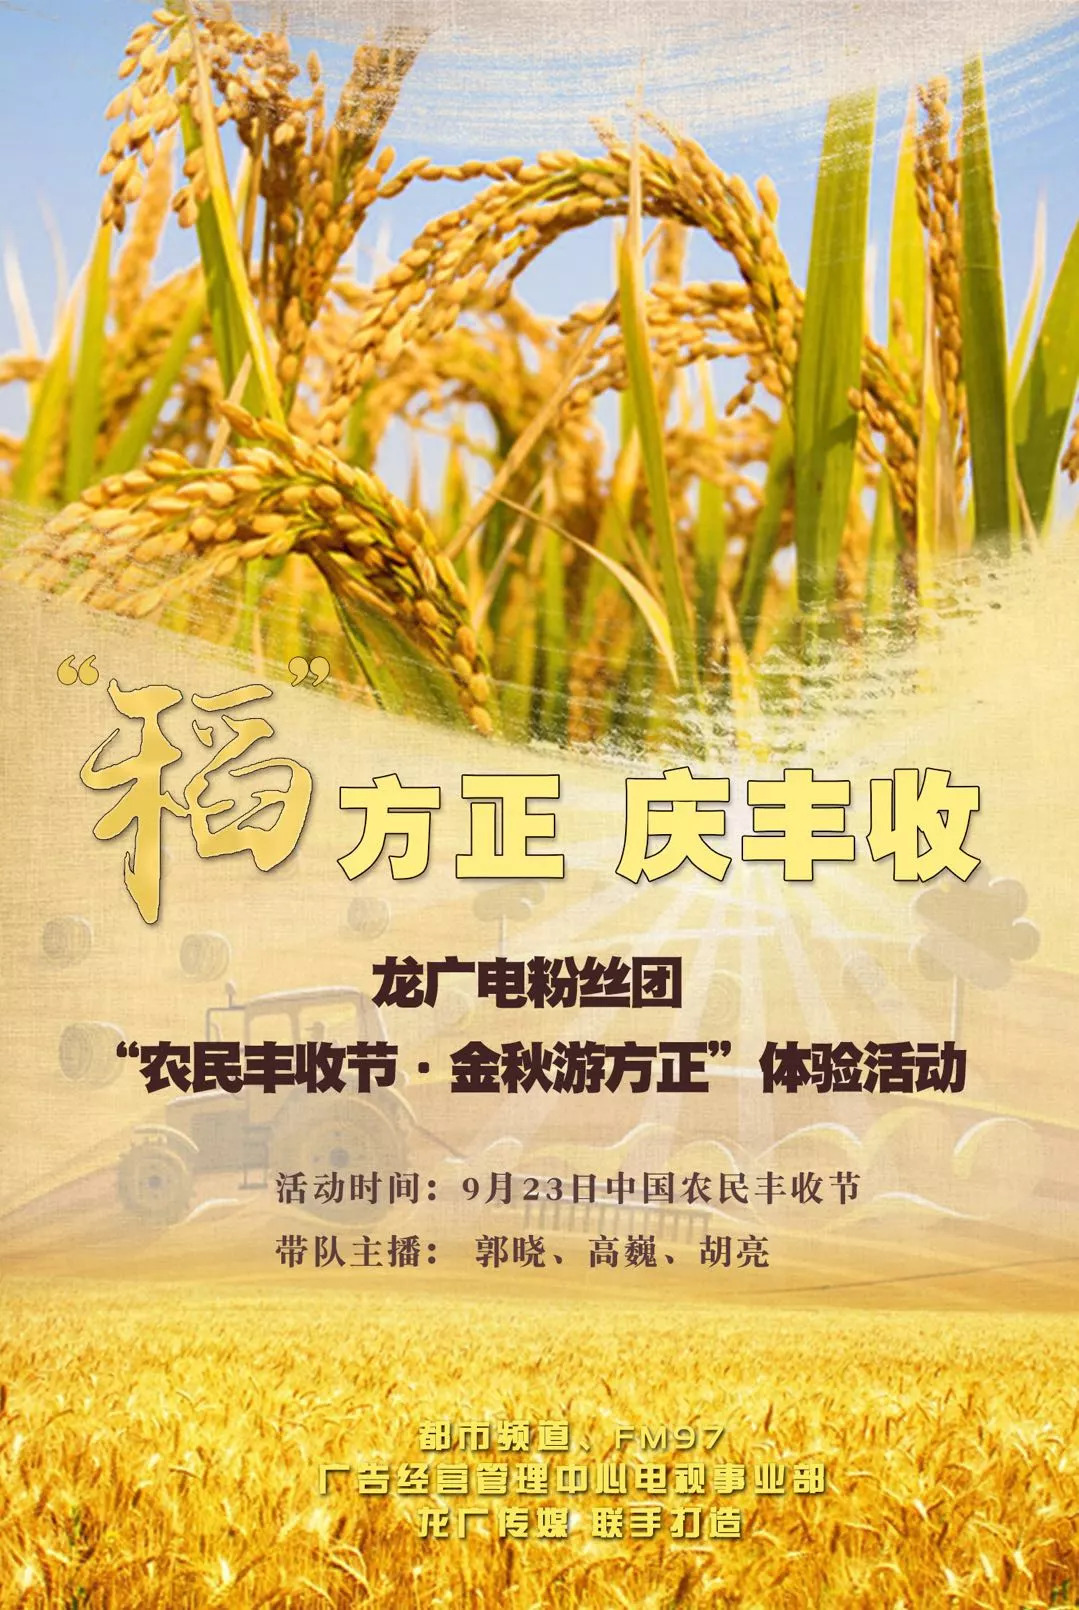 中国农民丰收节标语图片